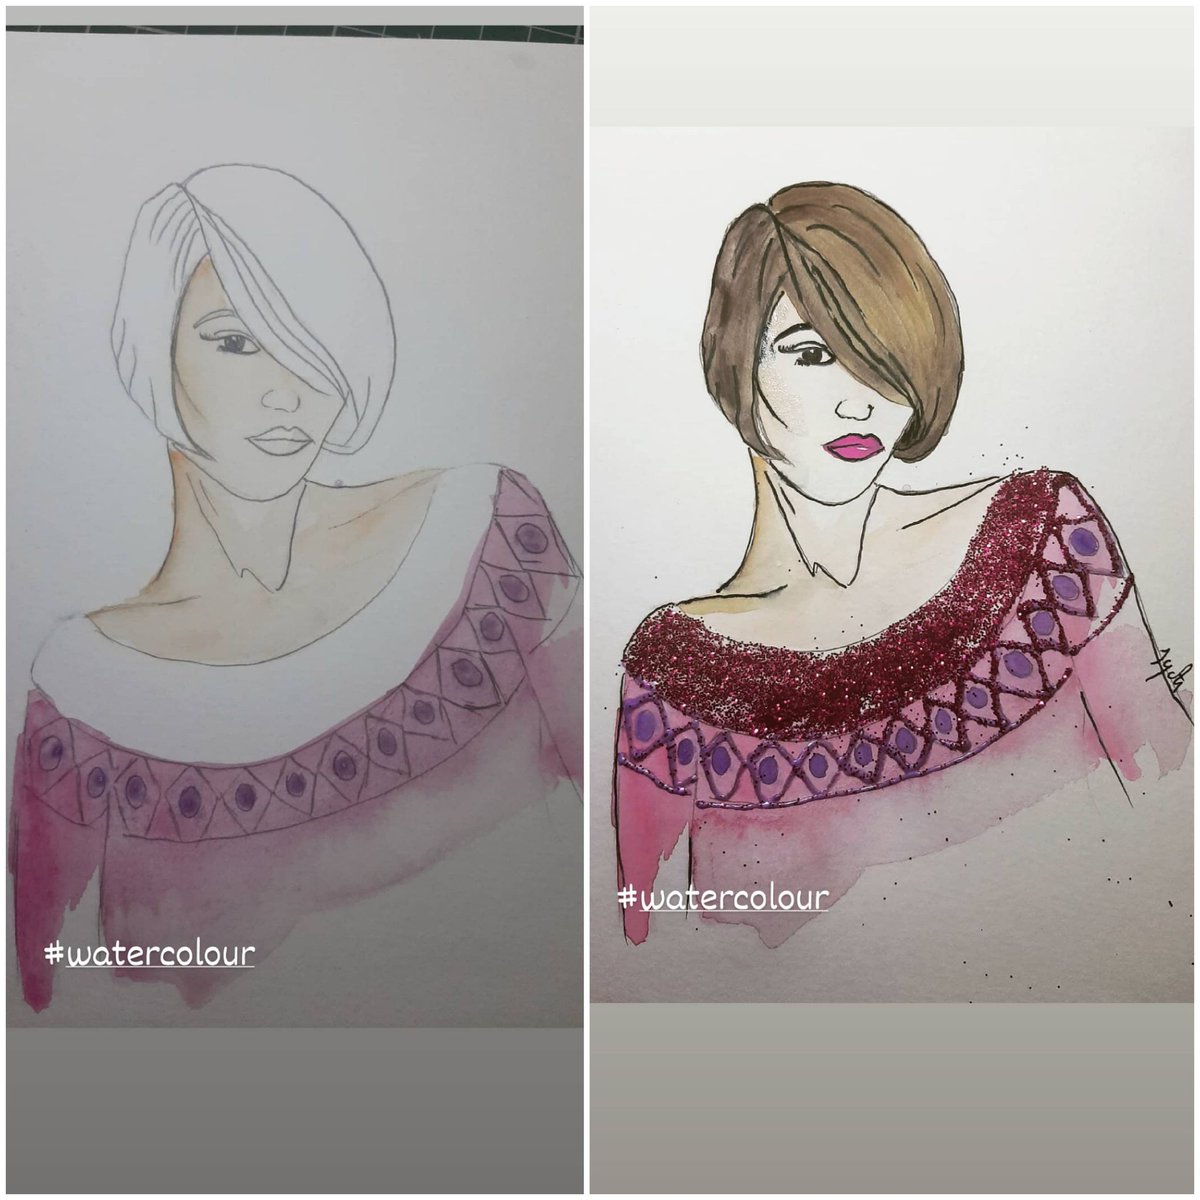 Water colour art

Me on Instagram also👇
instagram.com/colorgirl_jyoti

#watercolour #illustrationart #lovelife#illustration #winter #gliter
#fashionstyle #art #artofinstagram #artoftype #artoftheday🎨 #gliter #sparklelove